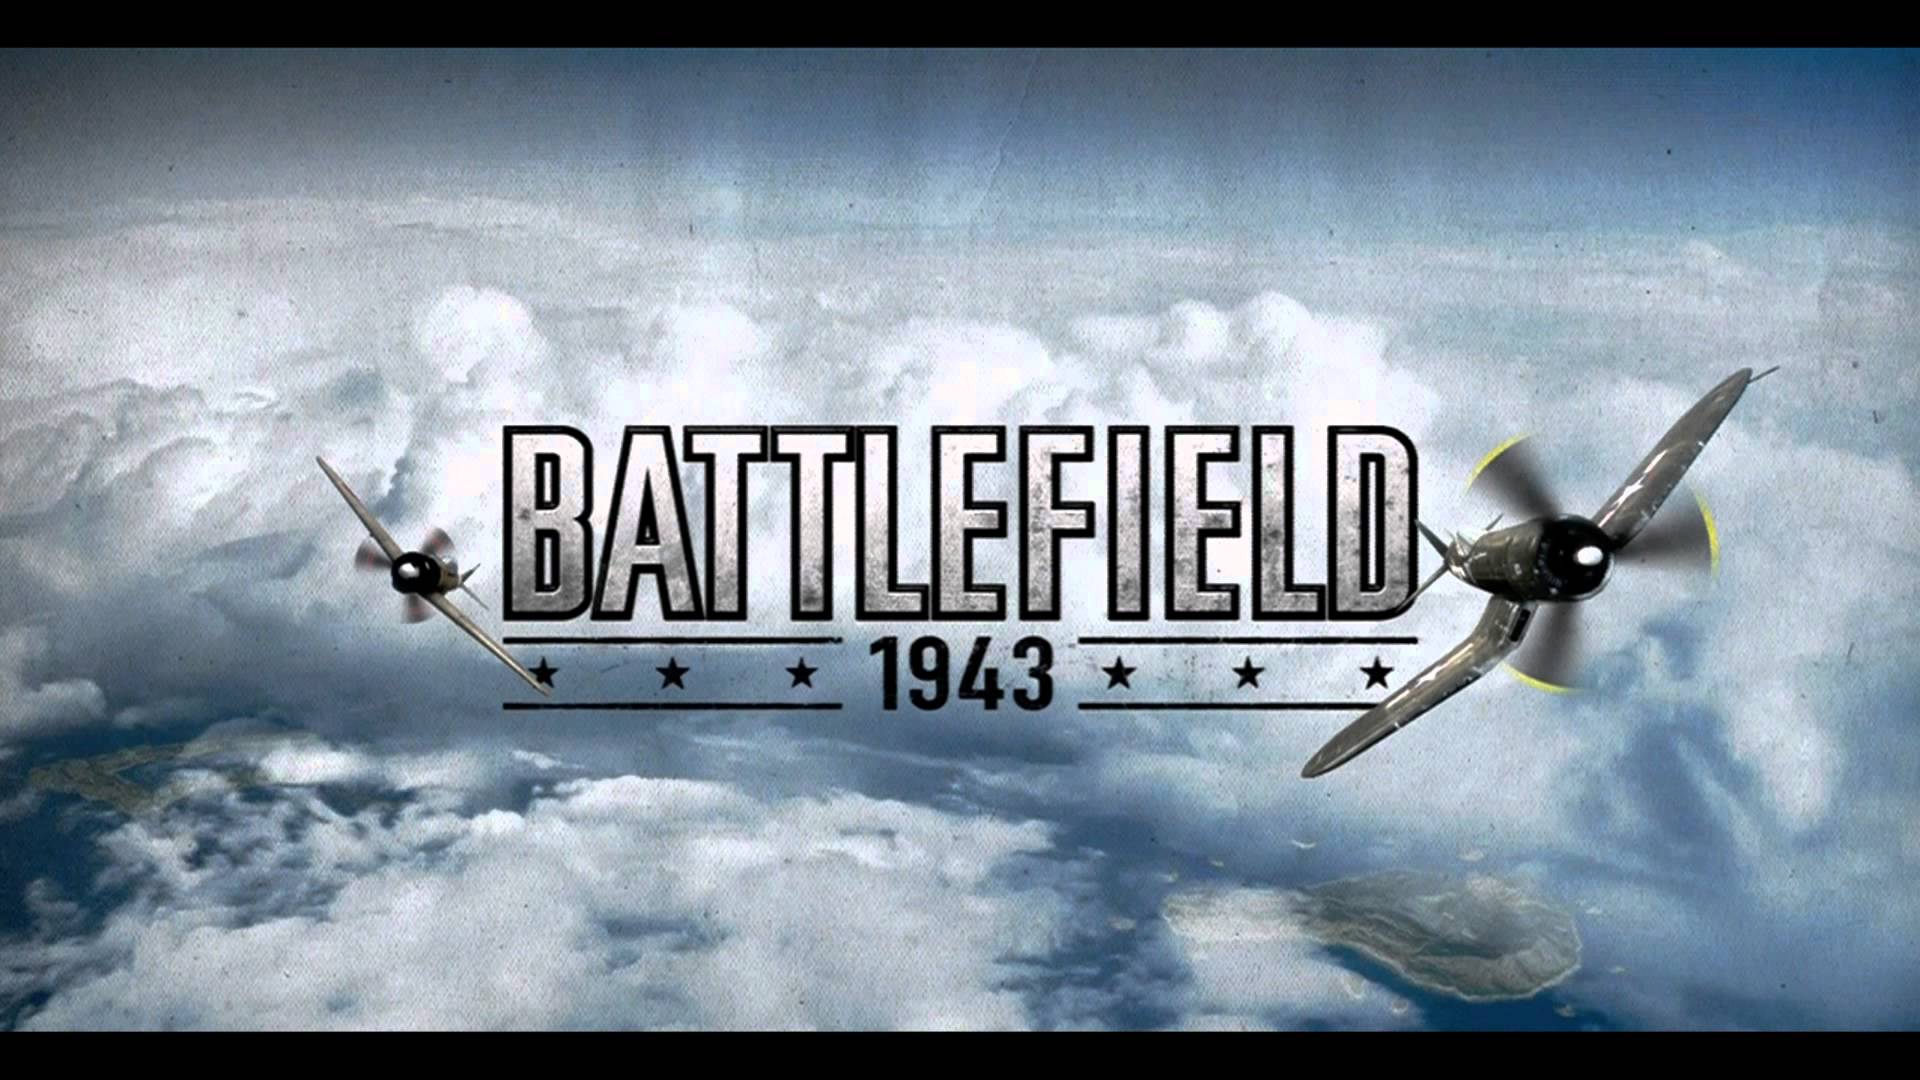 Battlefield 1943 HD wallpapers, Desktop wallpaper - most viewed